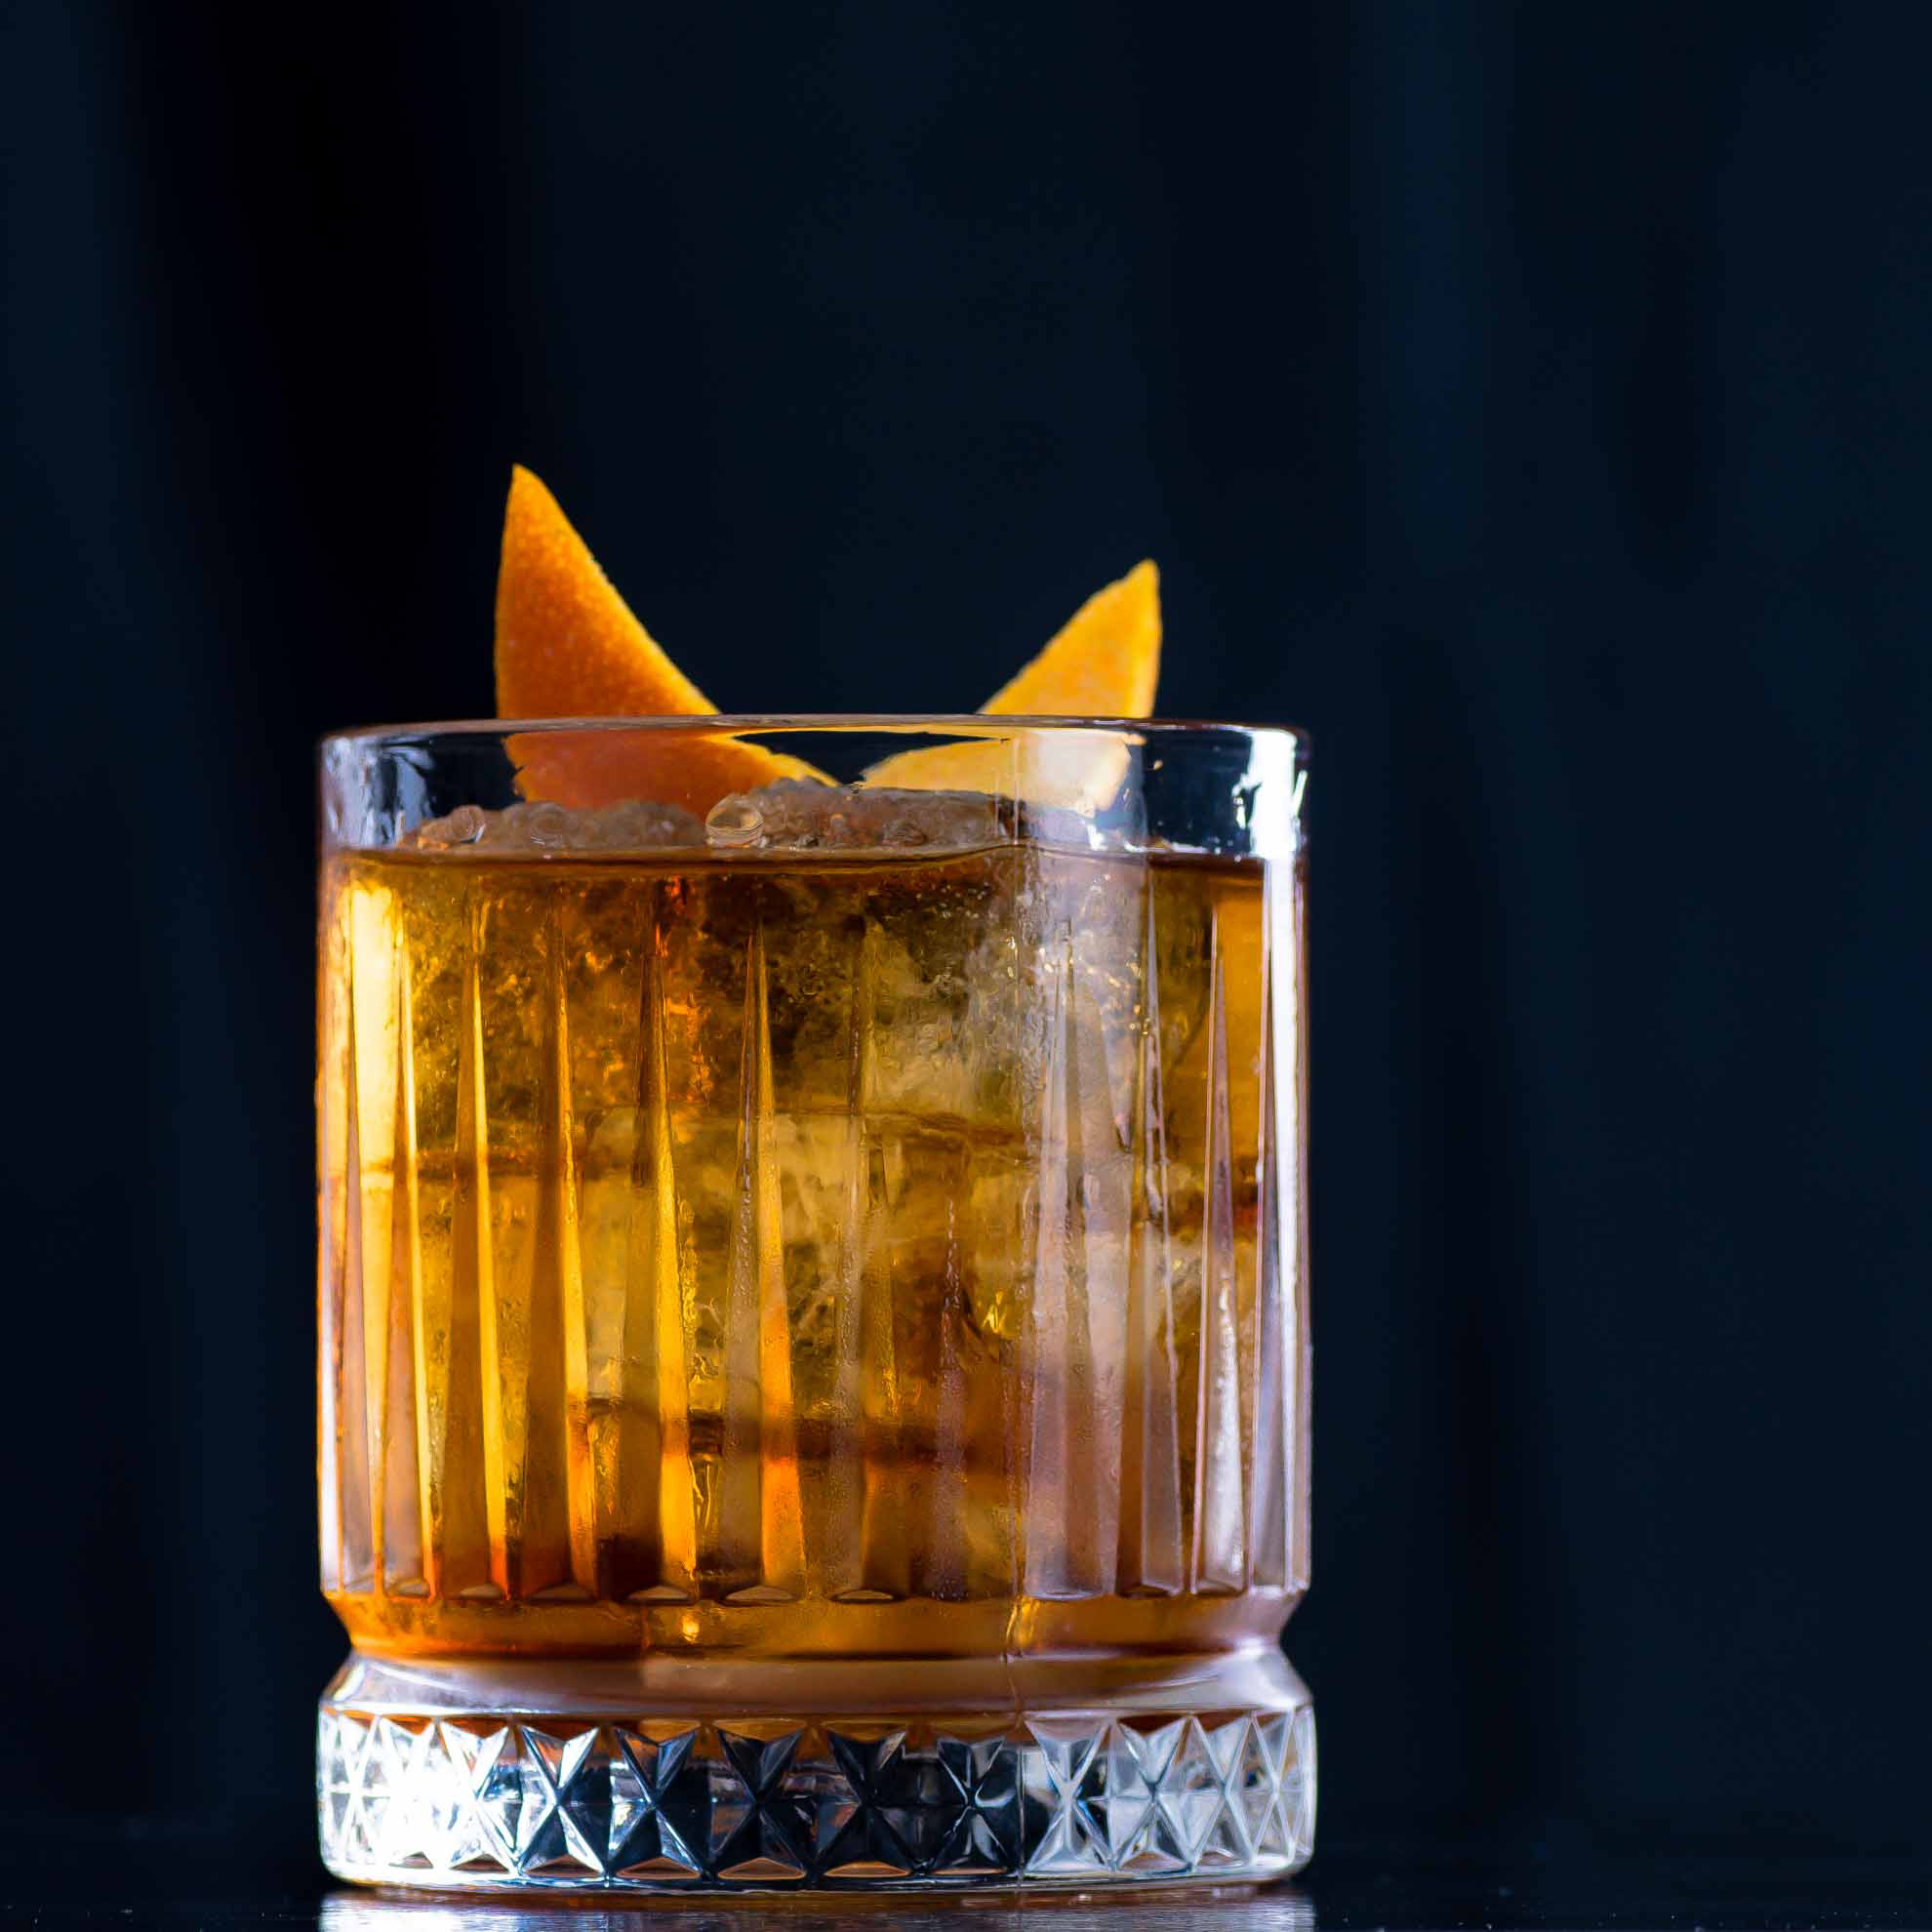 Ein Old Fashioned Cocktail mit Bourbon Whiskey, Bitters, Zuckersirup und Orangenzeste.